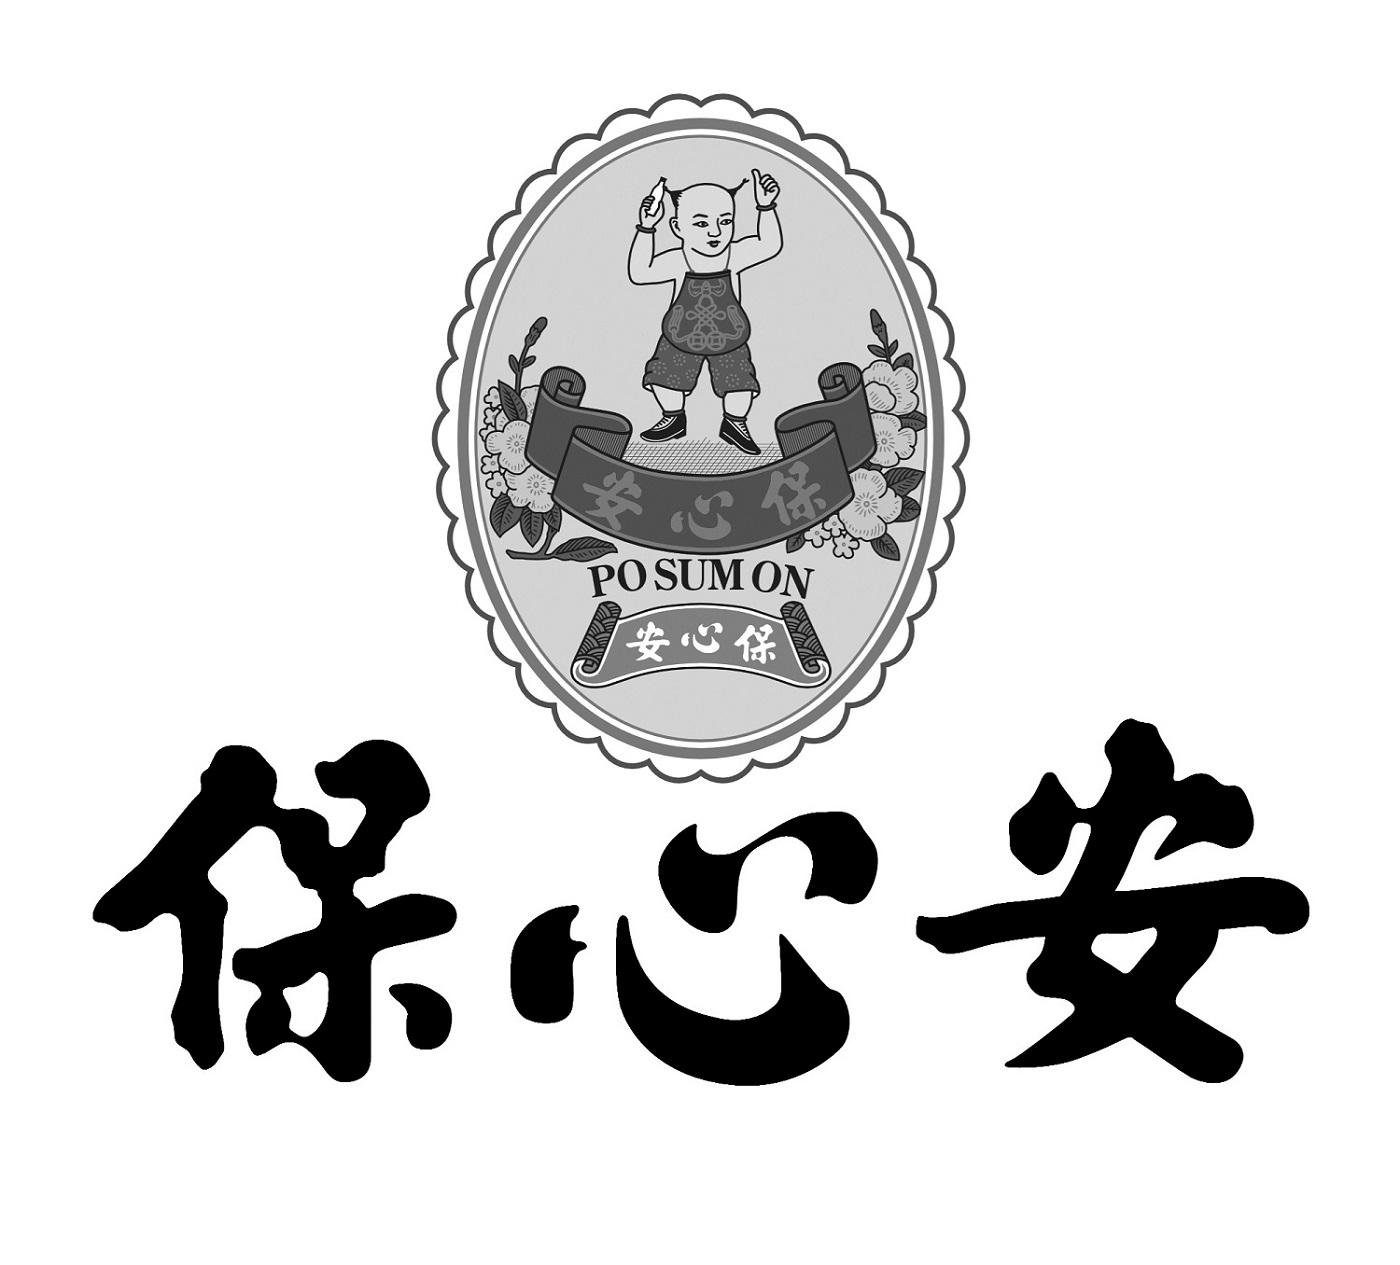 安心保险logo图片